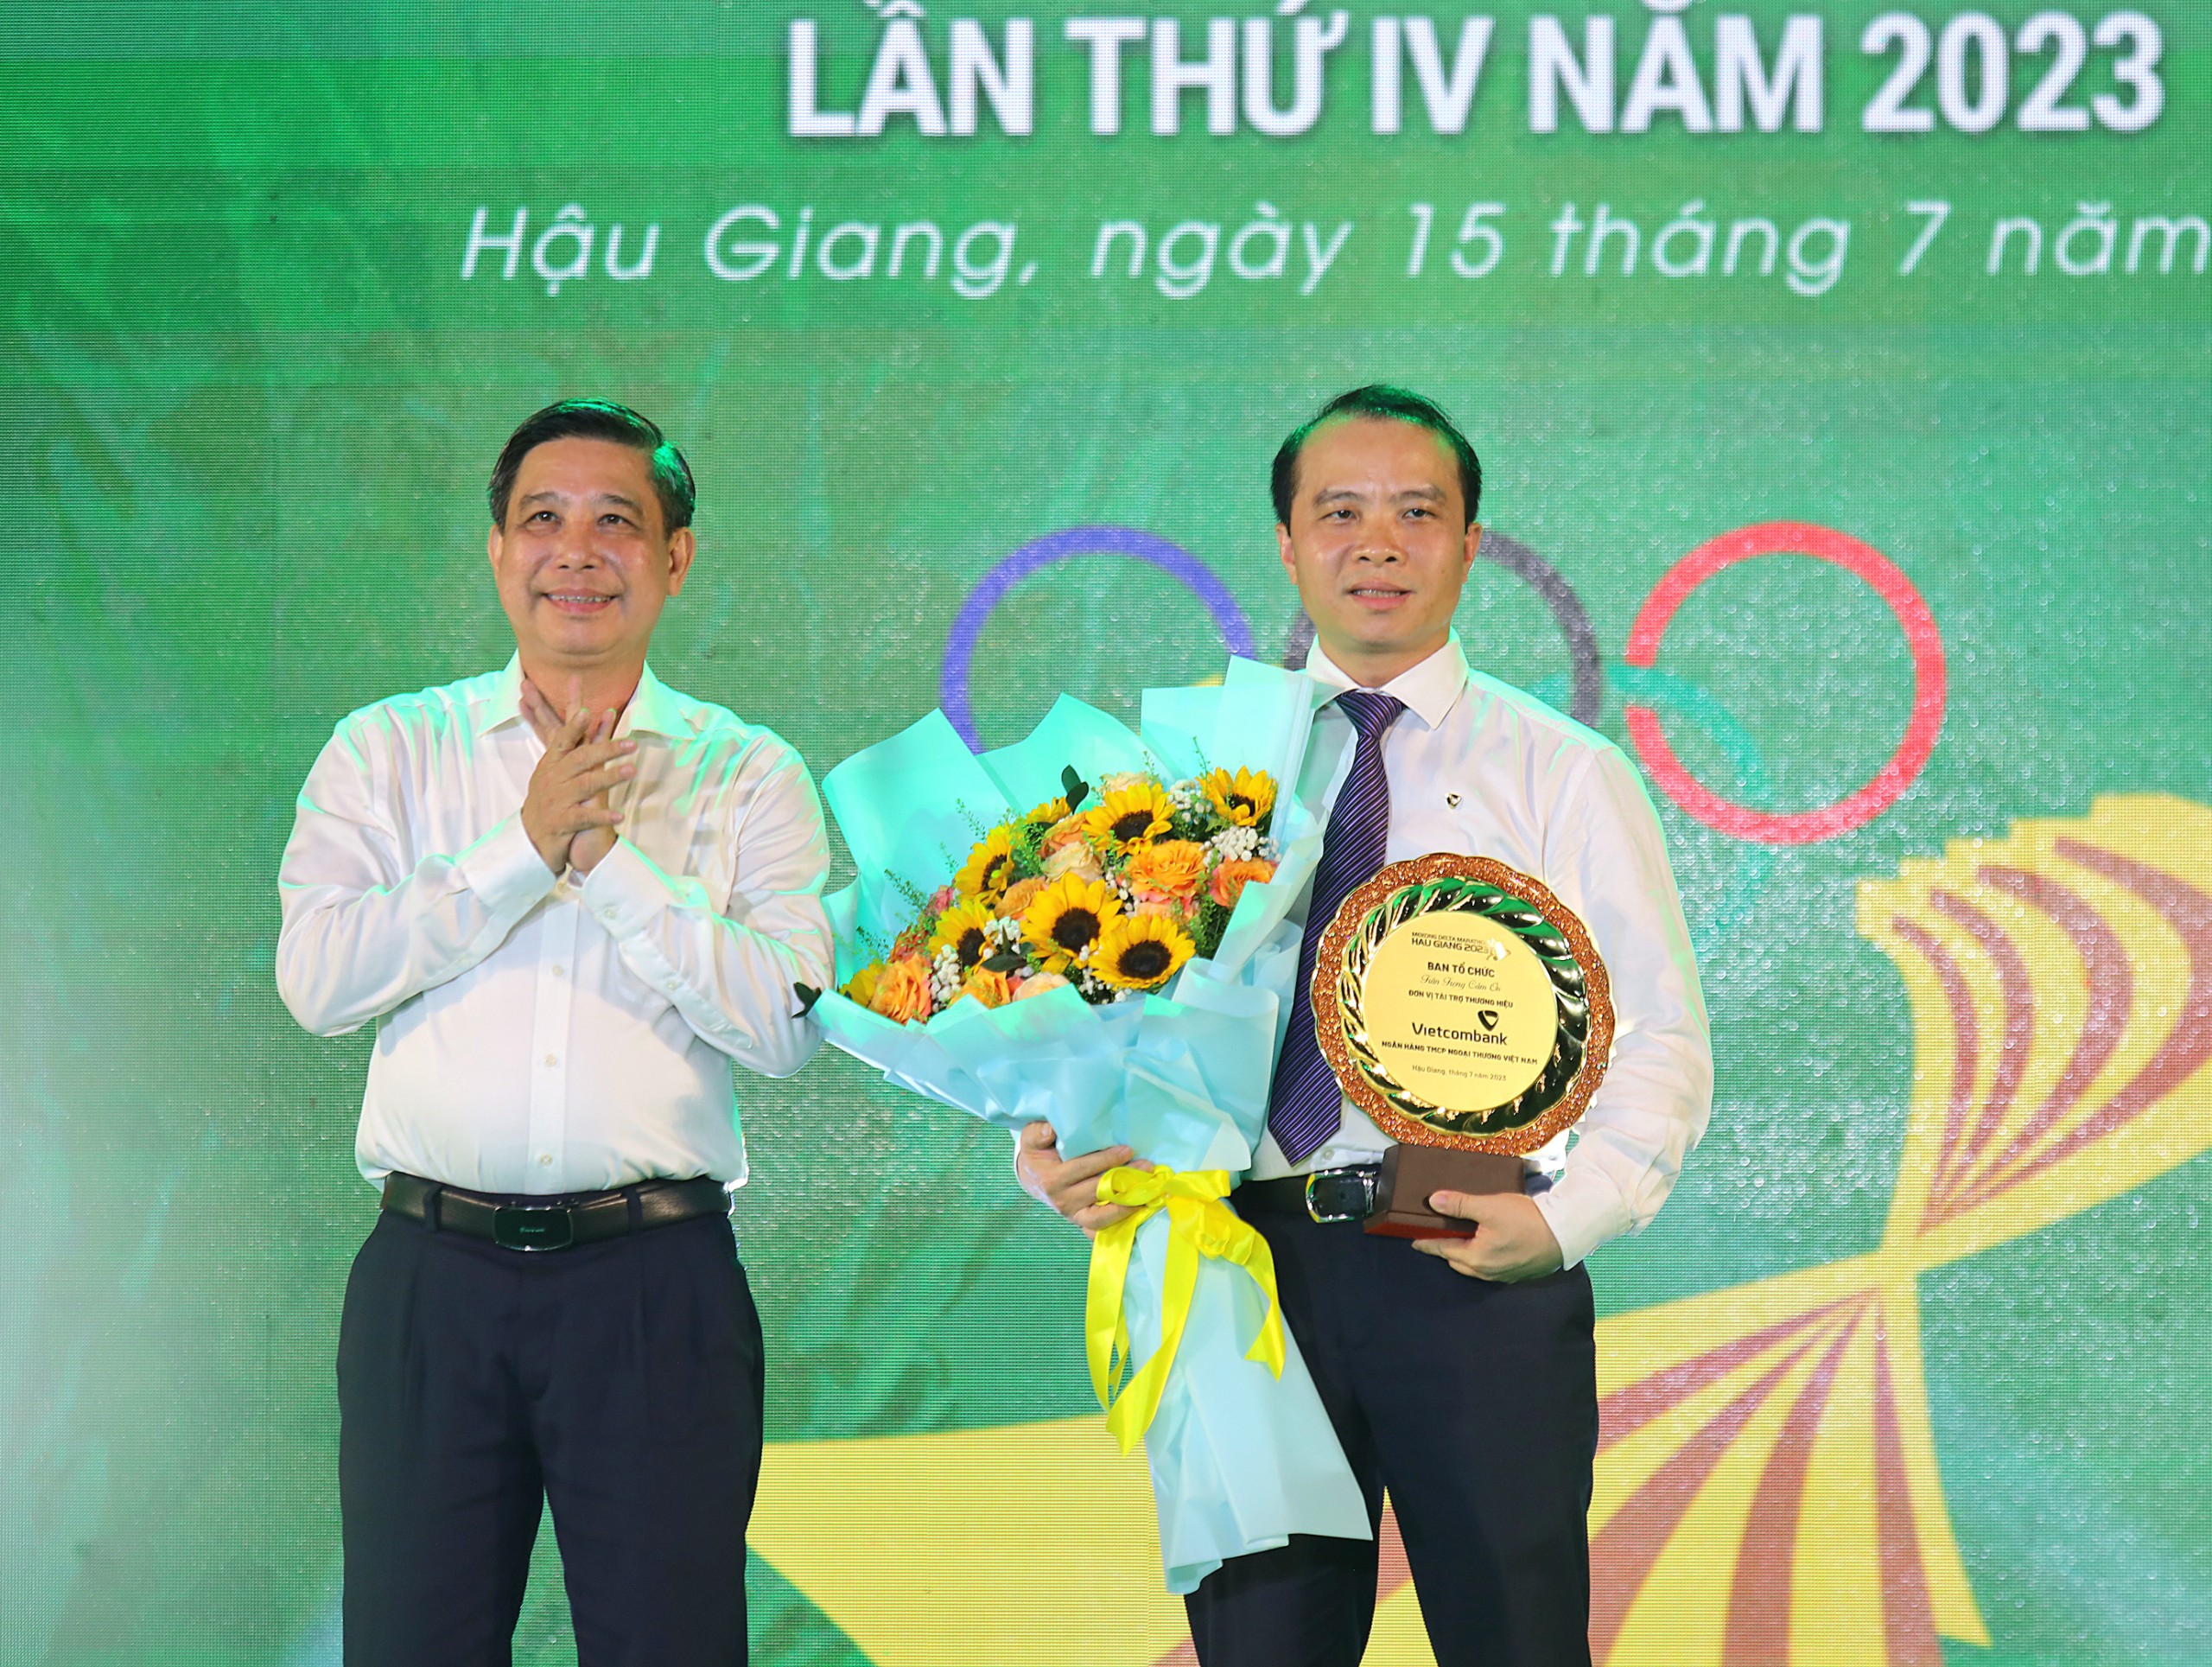 Ông Đồng Văn Thanh - Phó Bí thư Tỉnh ủy, Chủ tịch Ủy ban nhân dân tỉnh Hậu Giang tặng hoa và kỷ niệm chương cho ông Đỗ Việt Hùng - Thành viên Hội đồng quản trị Ngân hàng Vietcombank, nhà tài trợ thương hiệu cho Giải Marathon.